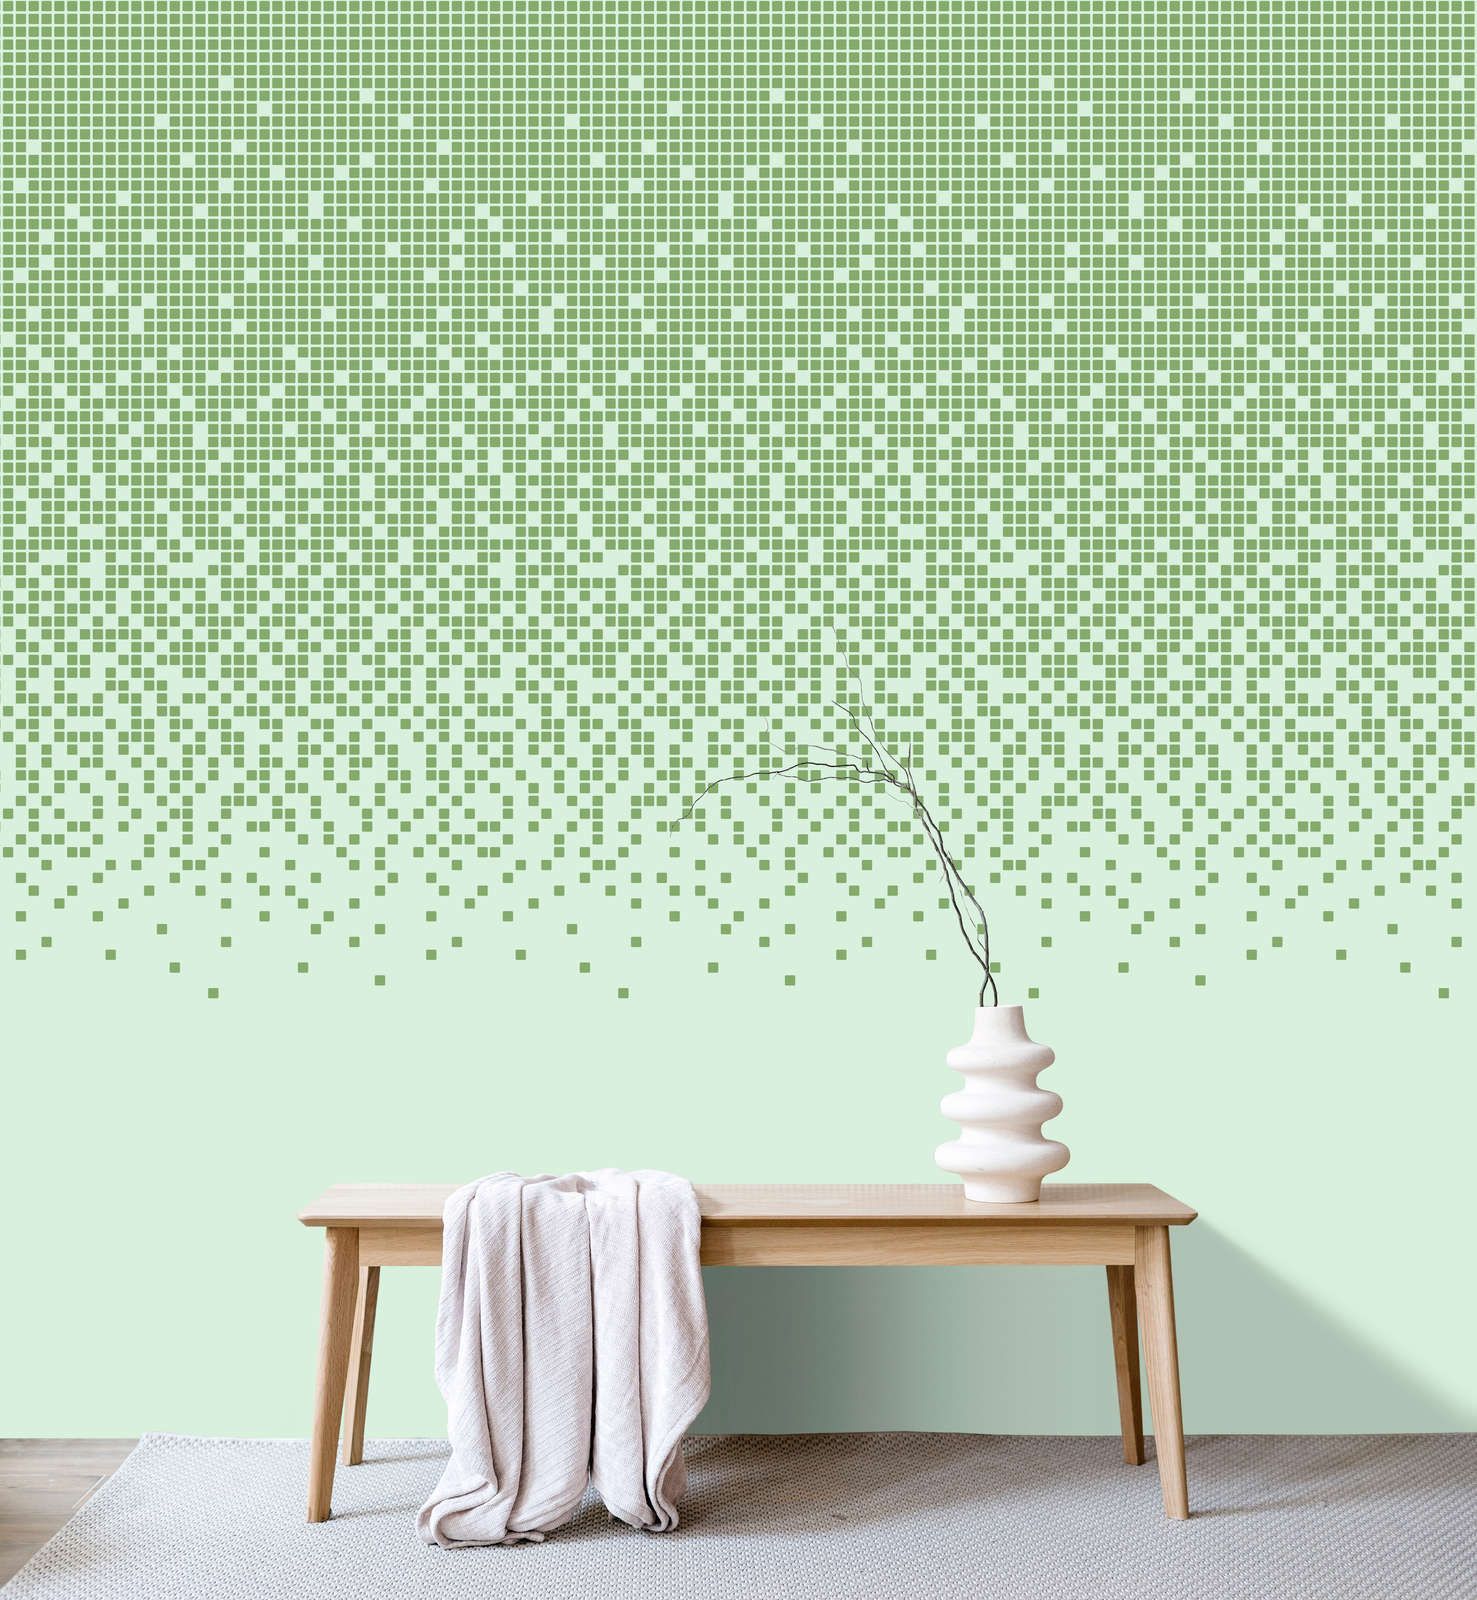             Digital behang »pixi mint« - Mozaïekpatroon met pixelstijl - Groen | Licht structuurvlies
        